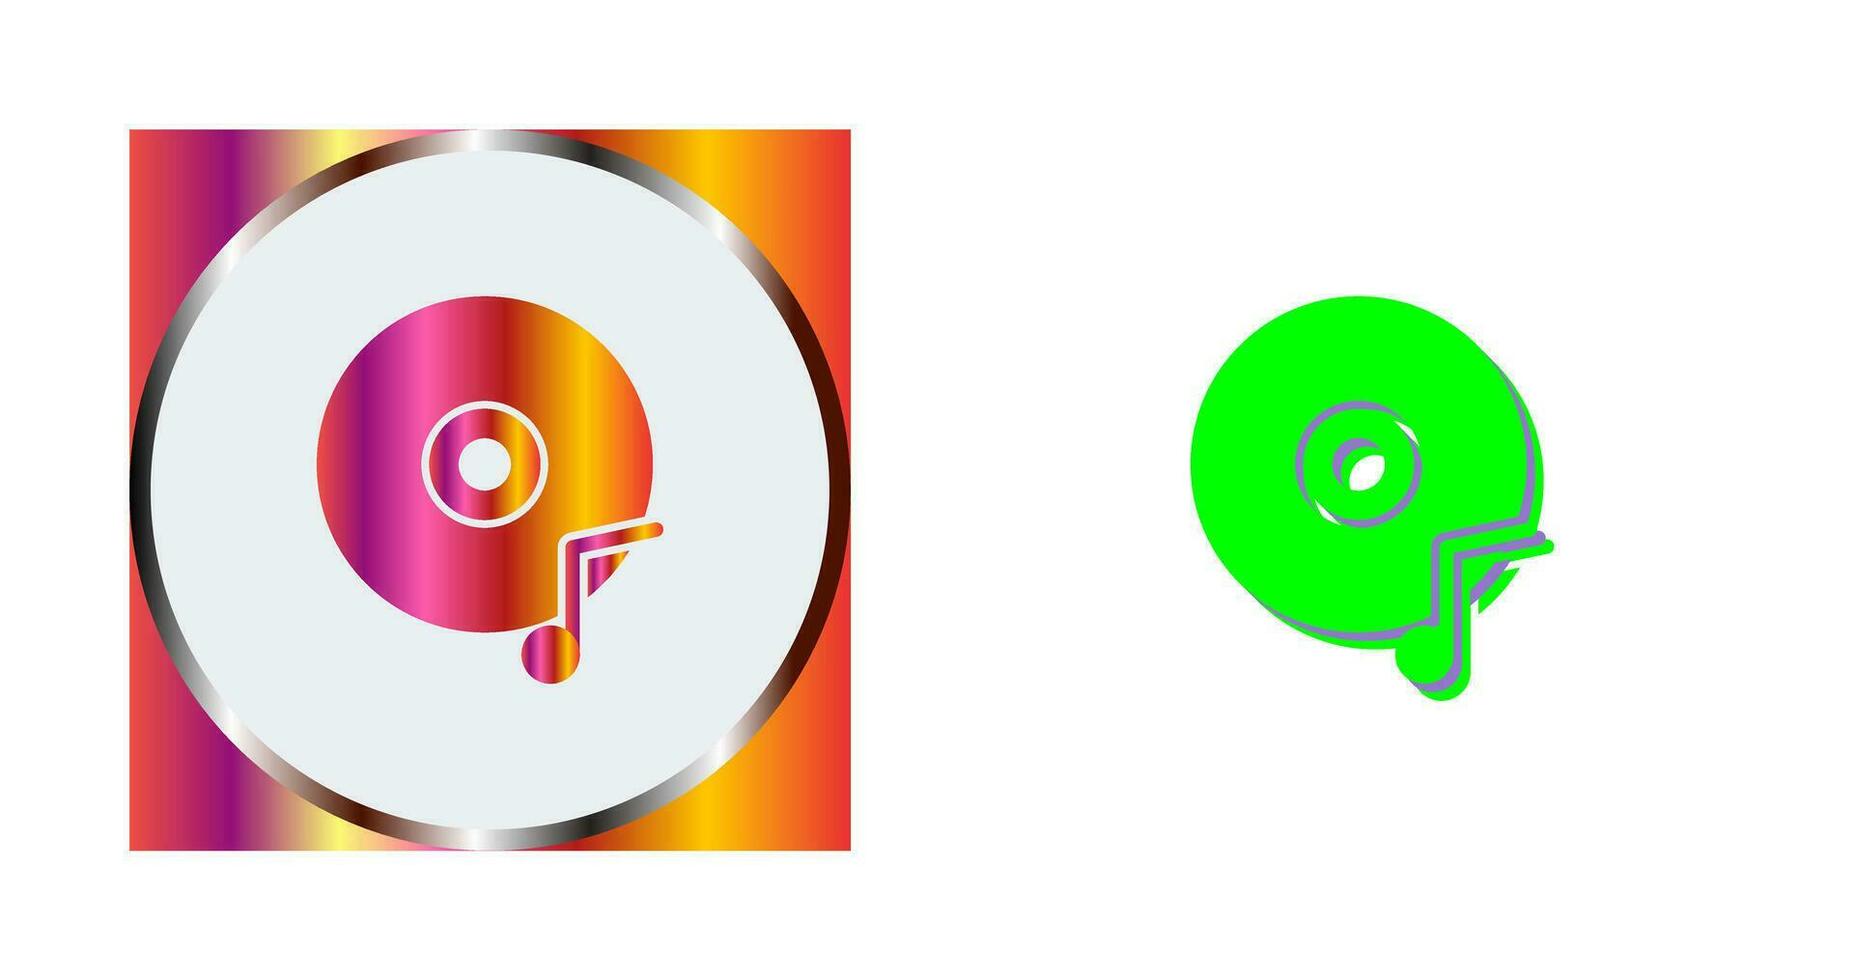 Musik-CD-Vektorsymbol vektor